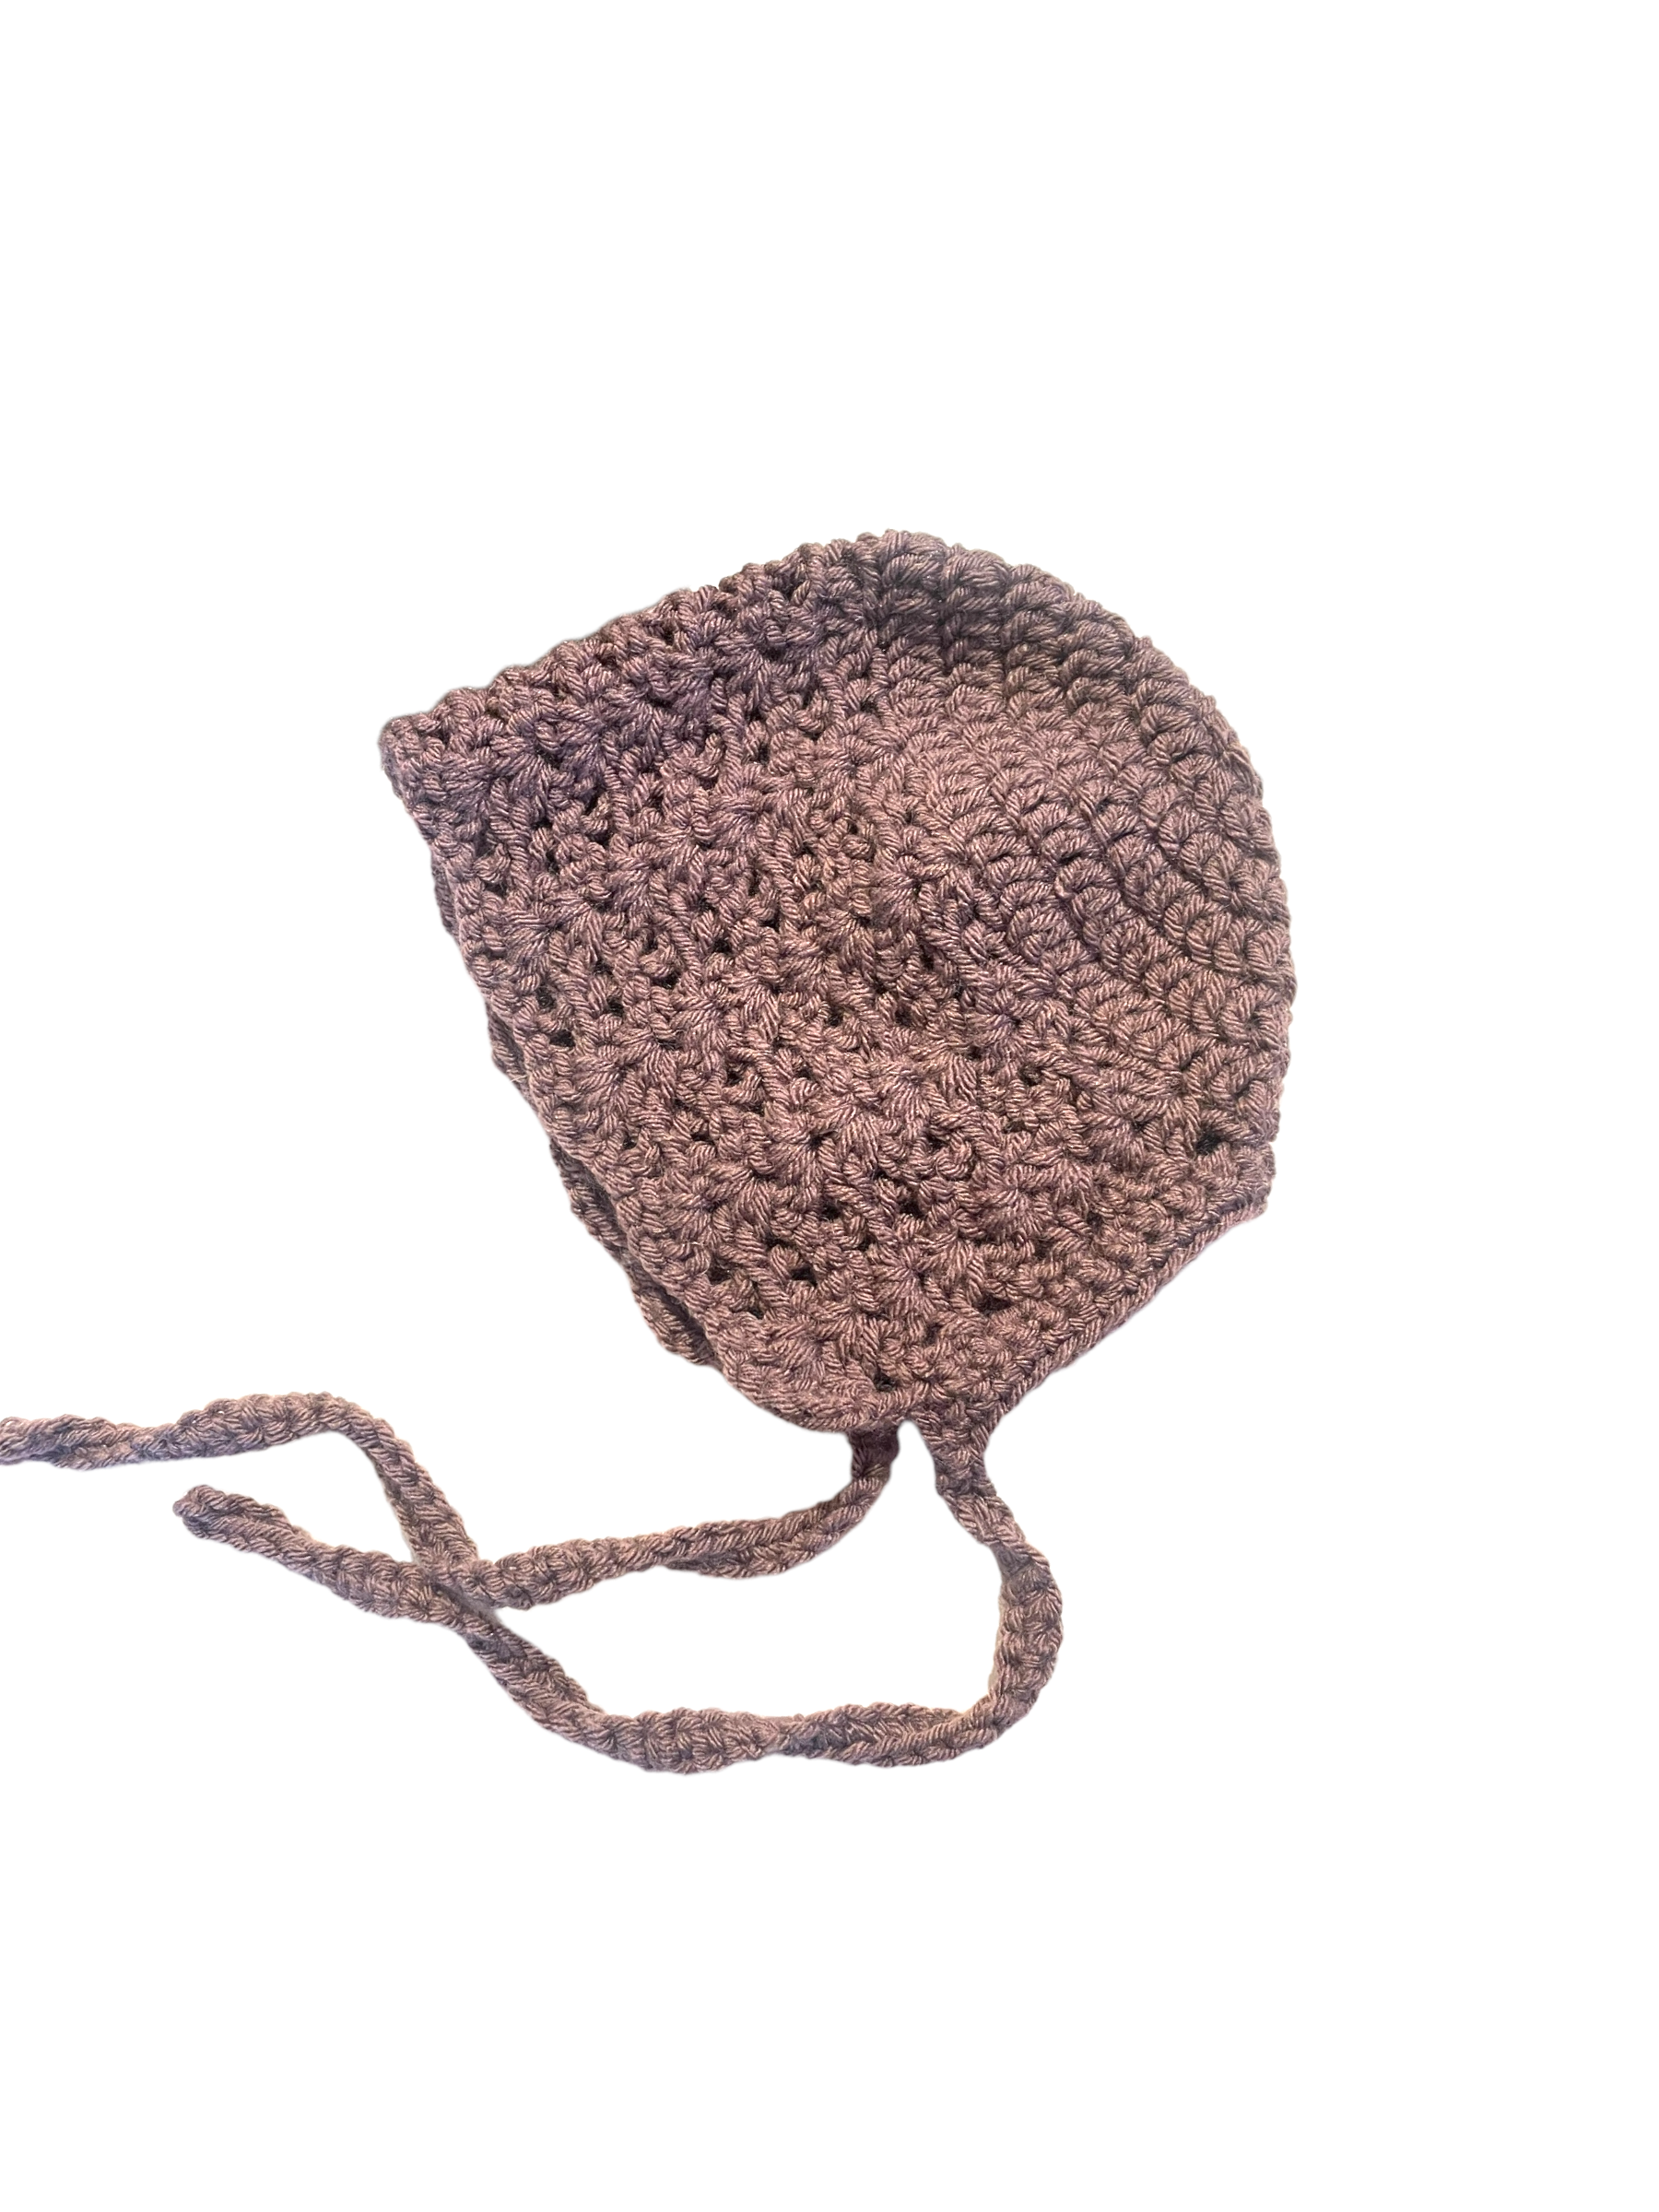 Crocheted Bonnet Hats by Hooks & Hoops Handmade